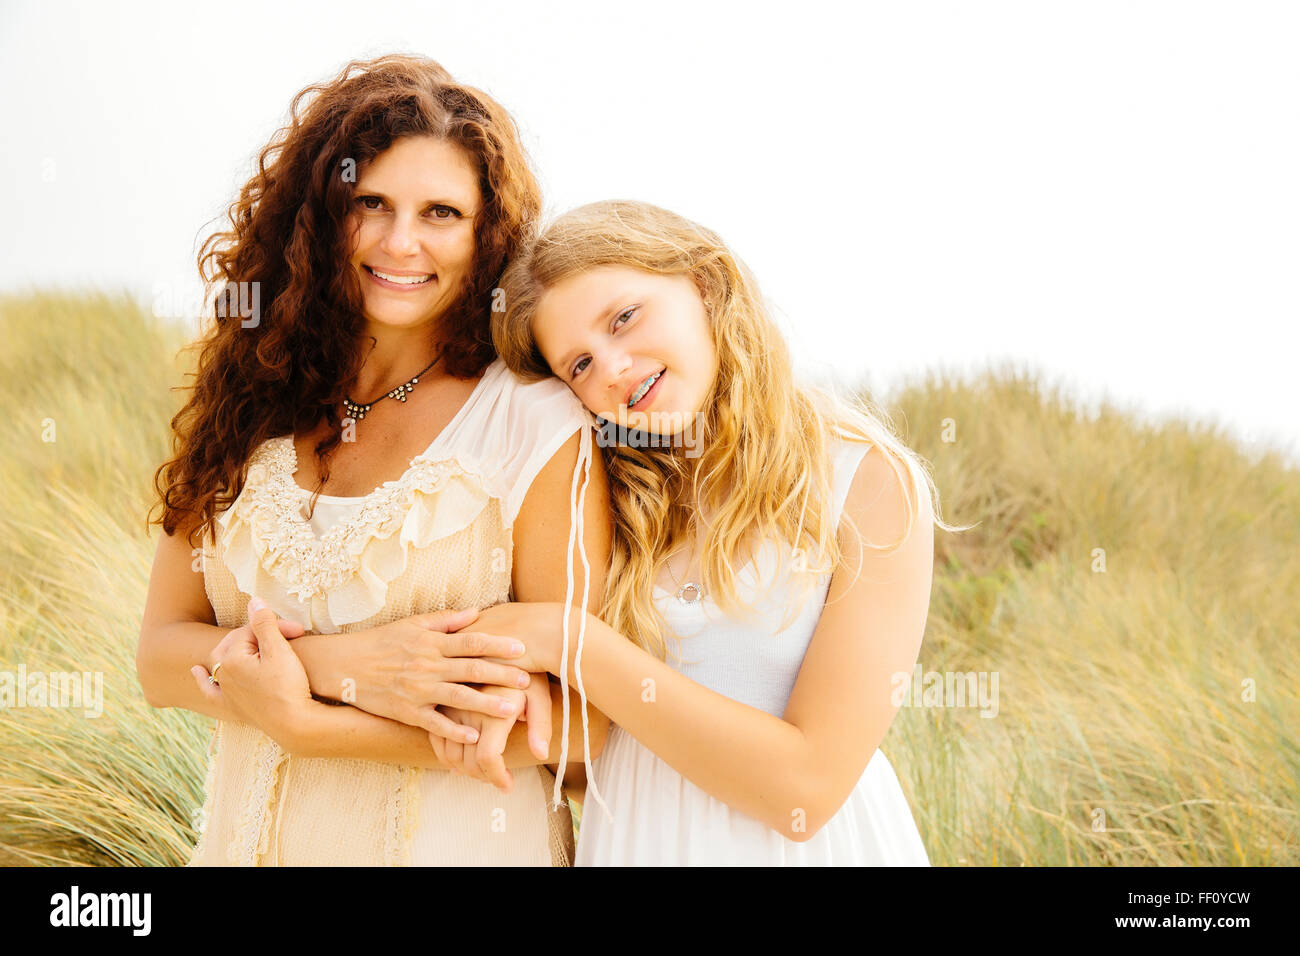 Mère et fille smiling on beach Banque D'Images